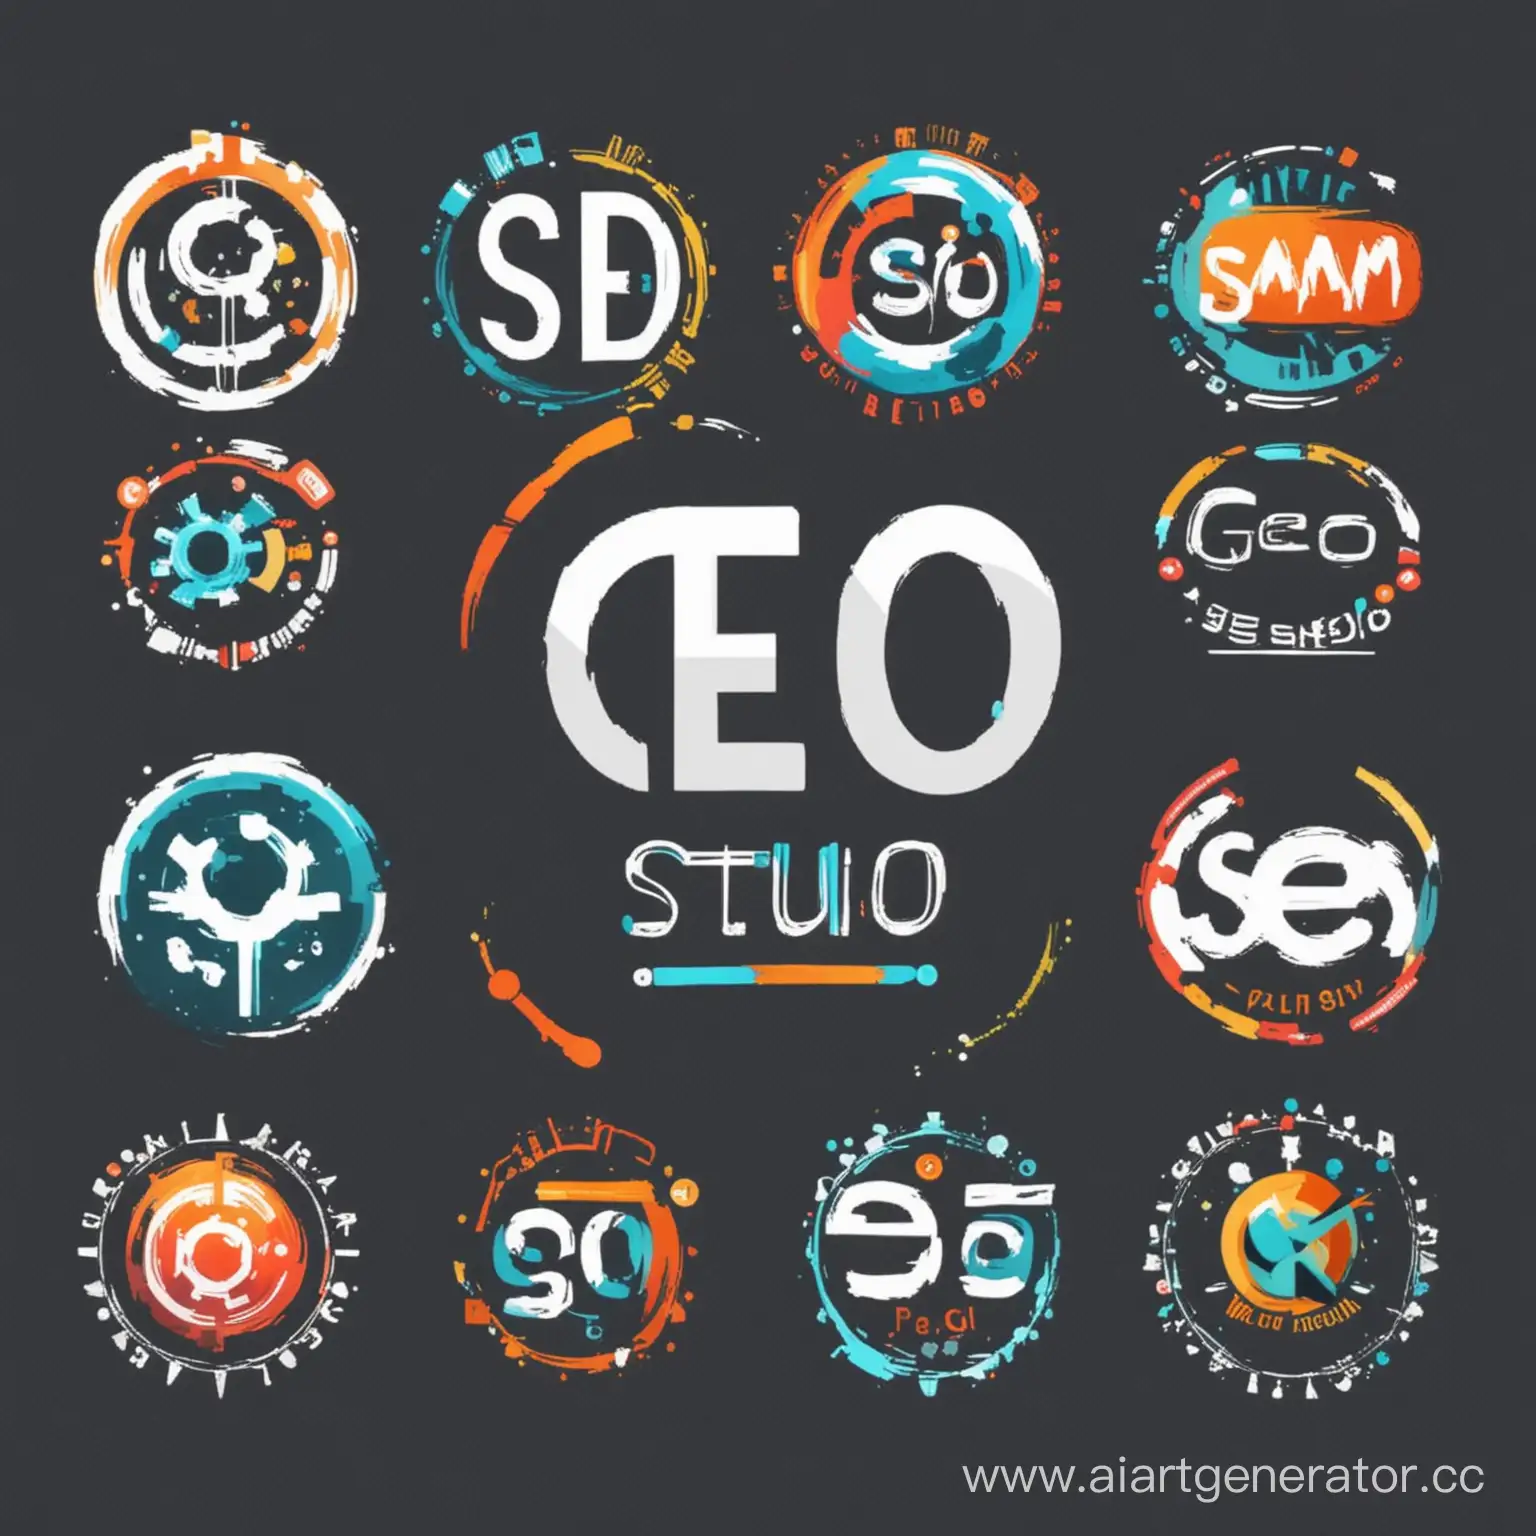 сгенерируй логотип для  вебстудии (seo-продвижение, администрирование, контент менеджмент, анализ конкурентов, аналитика ) . сделай красивый и оригинальный логотип на эту темамиту.